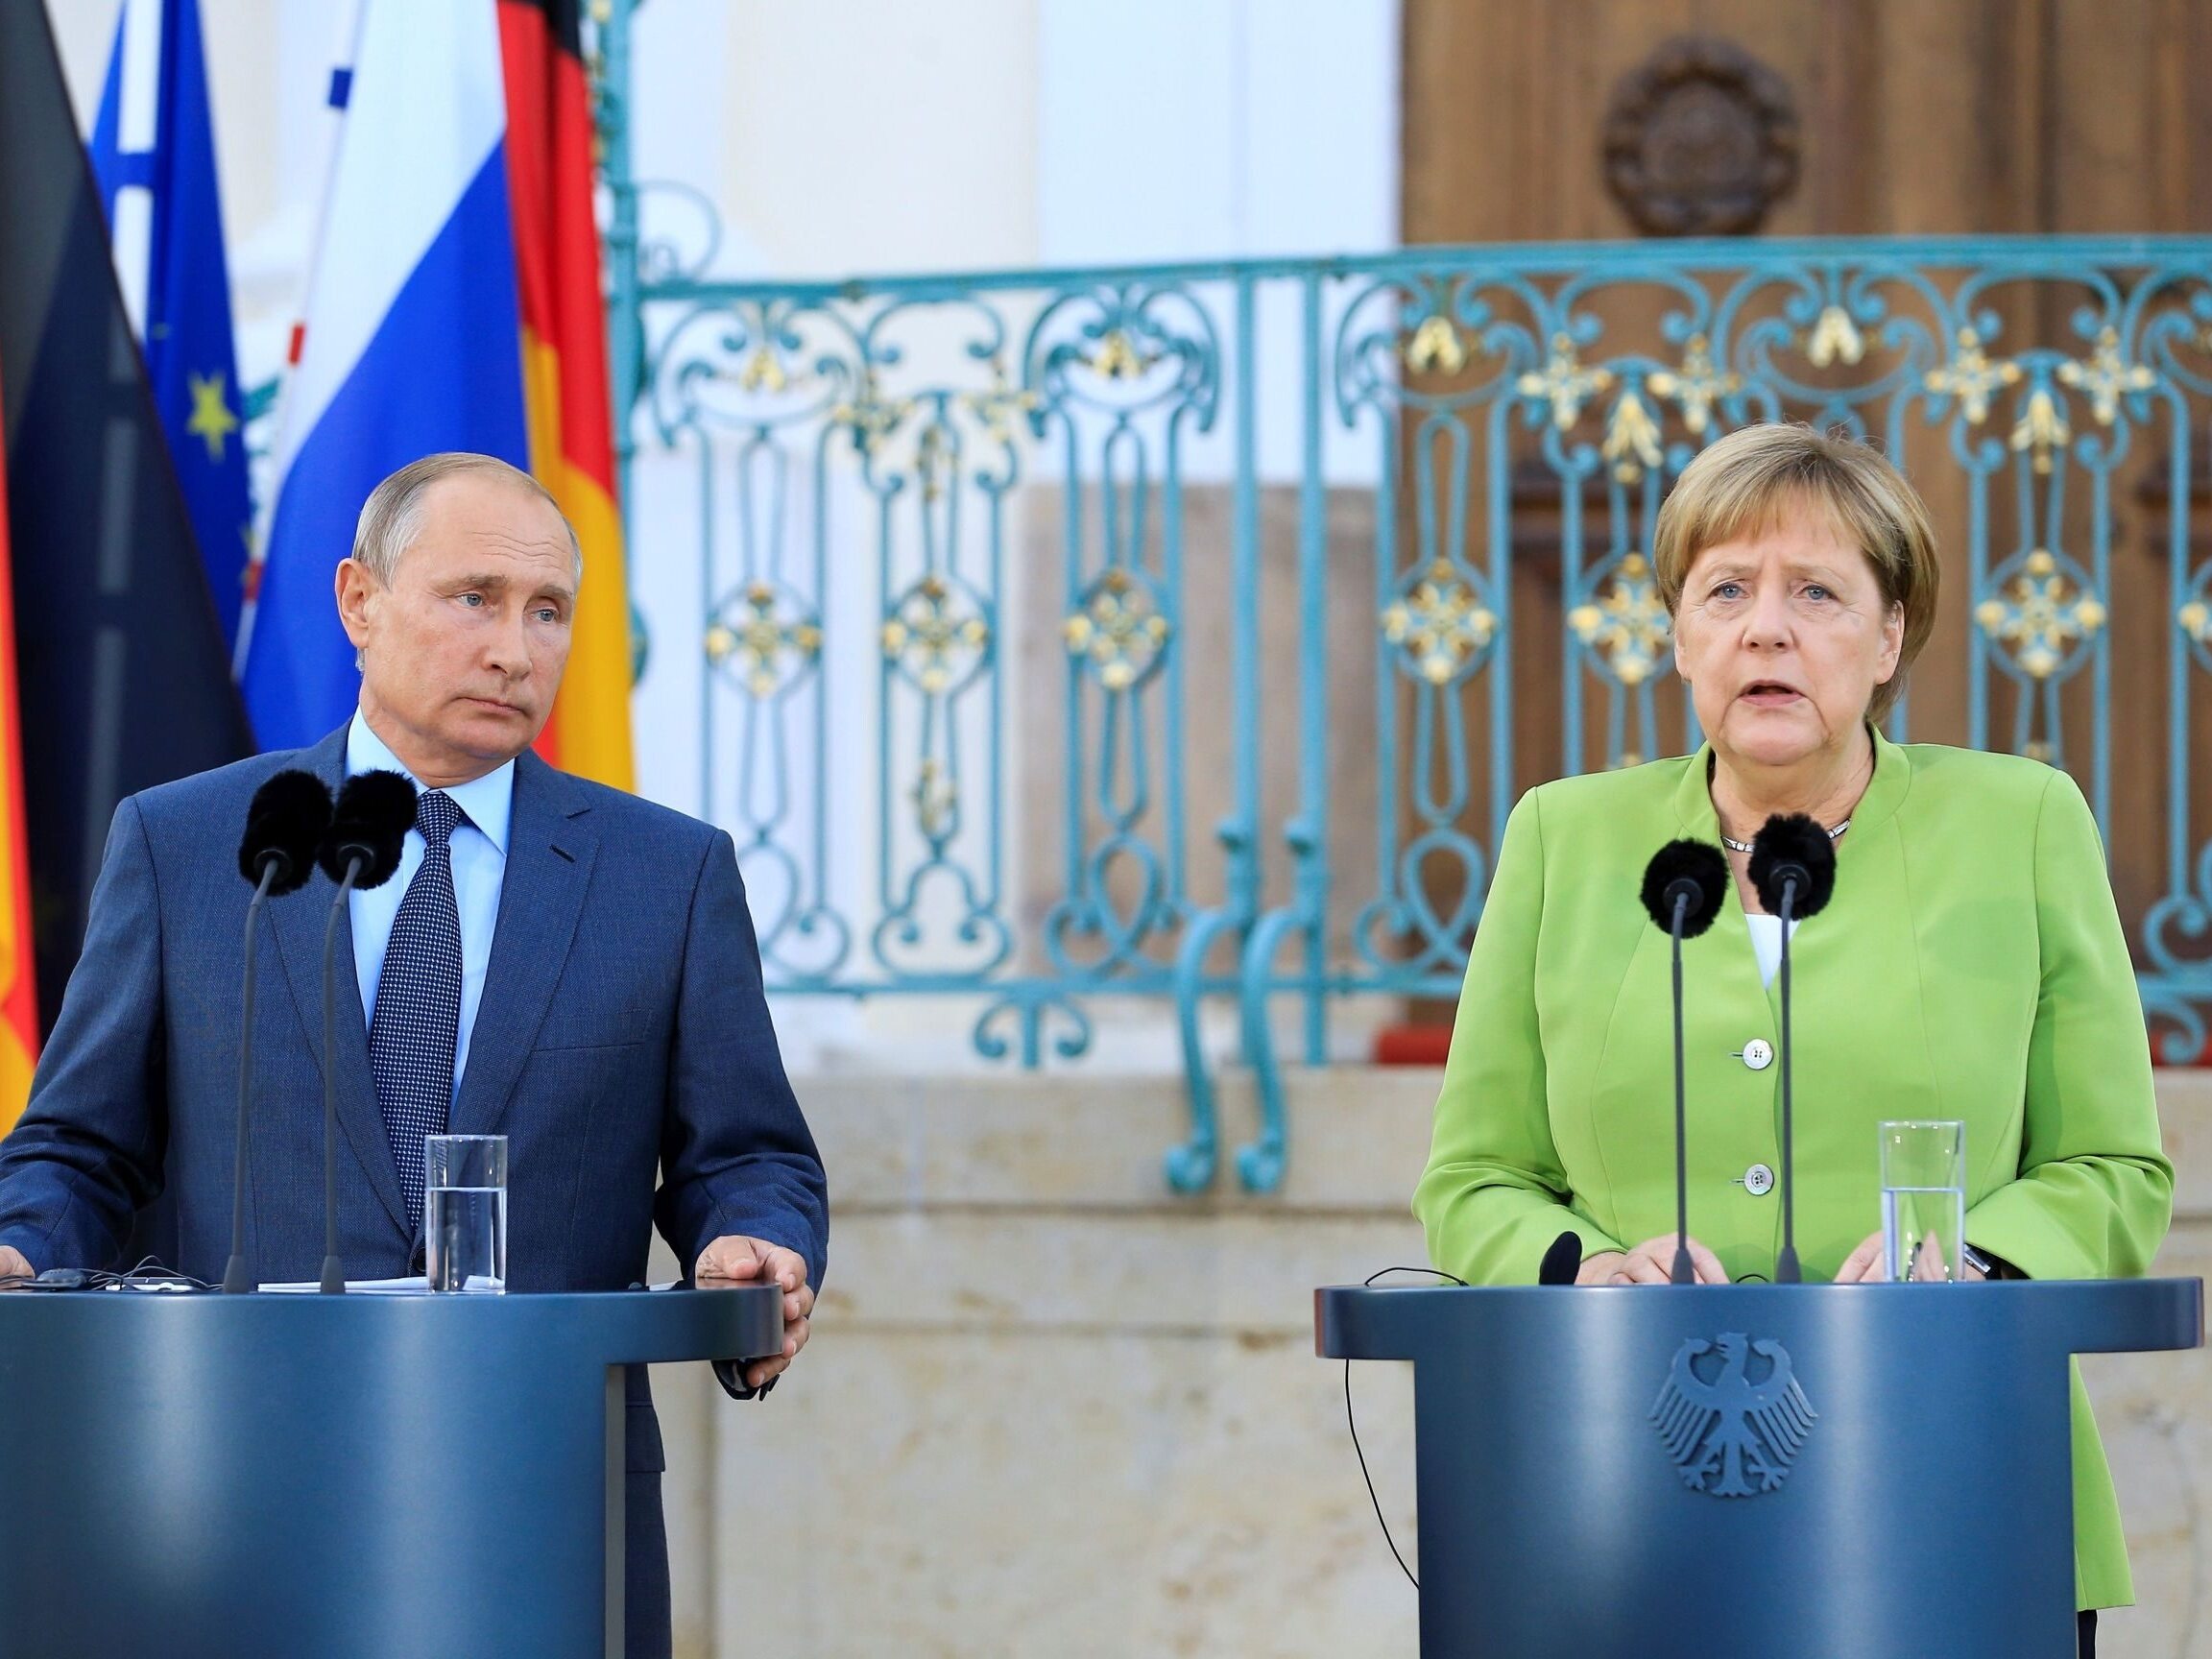 La France et l’Allemagne accusent la Russie d’avoir violé le protocole diplomatique – Wprost